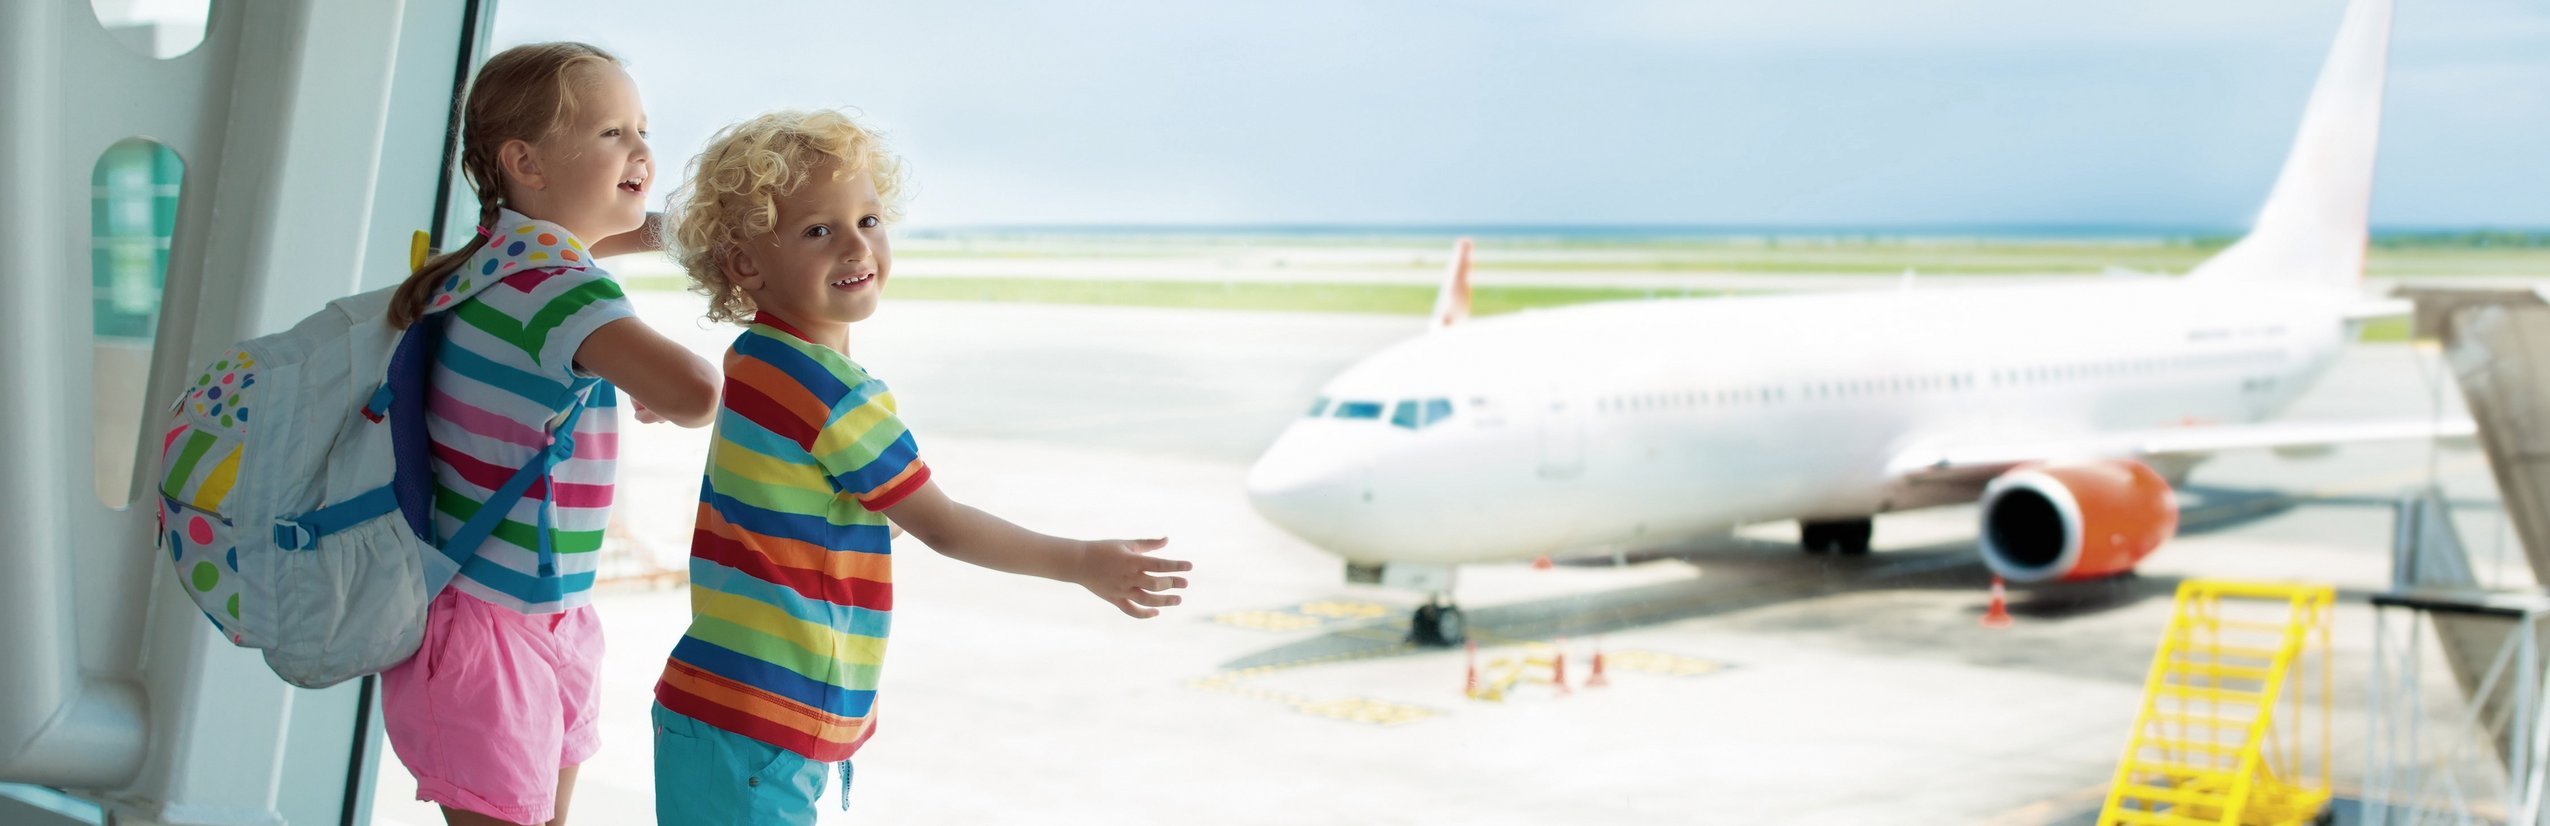 Reisespiele für Kinder - Beschäftigungsideen für Kinder im Auto und Flugzeug